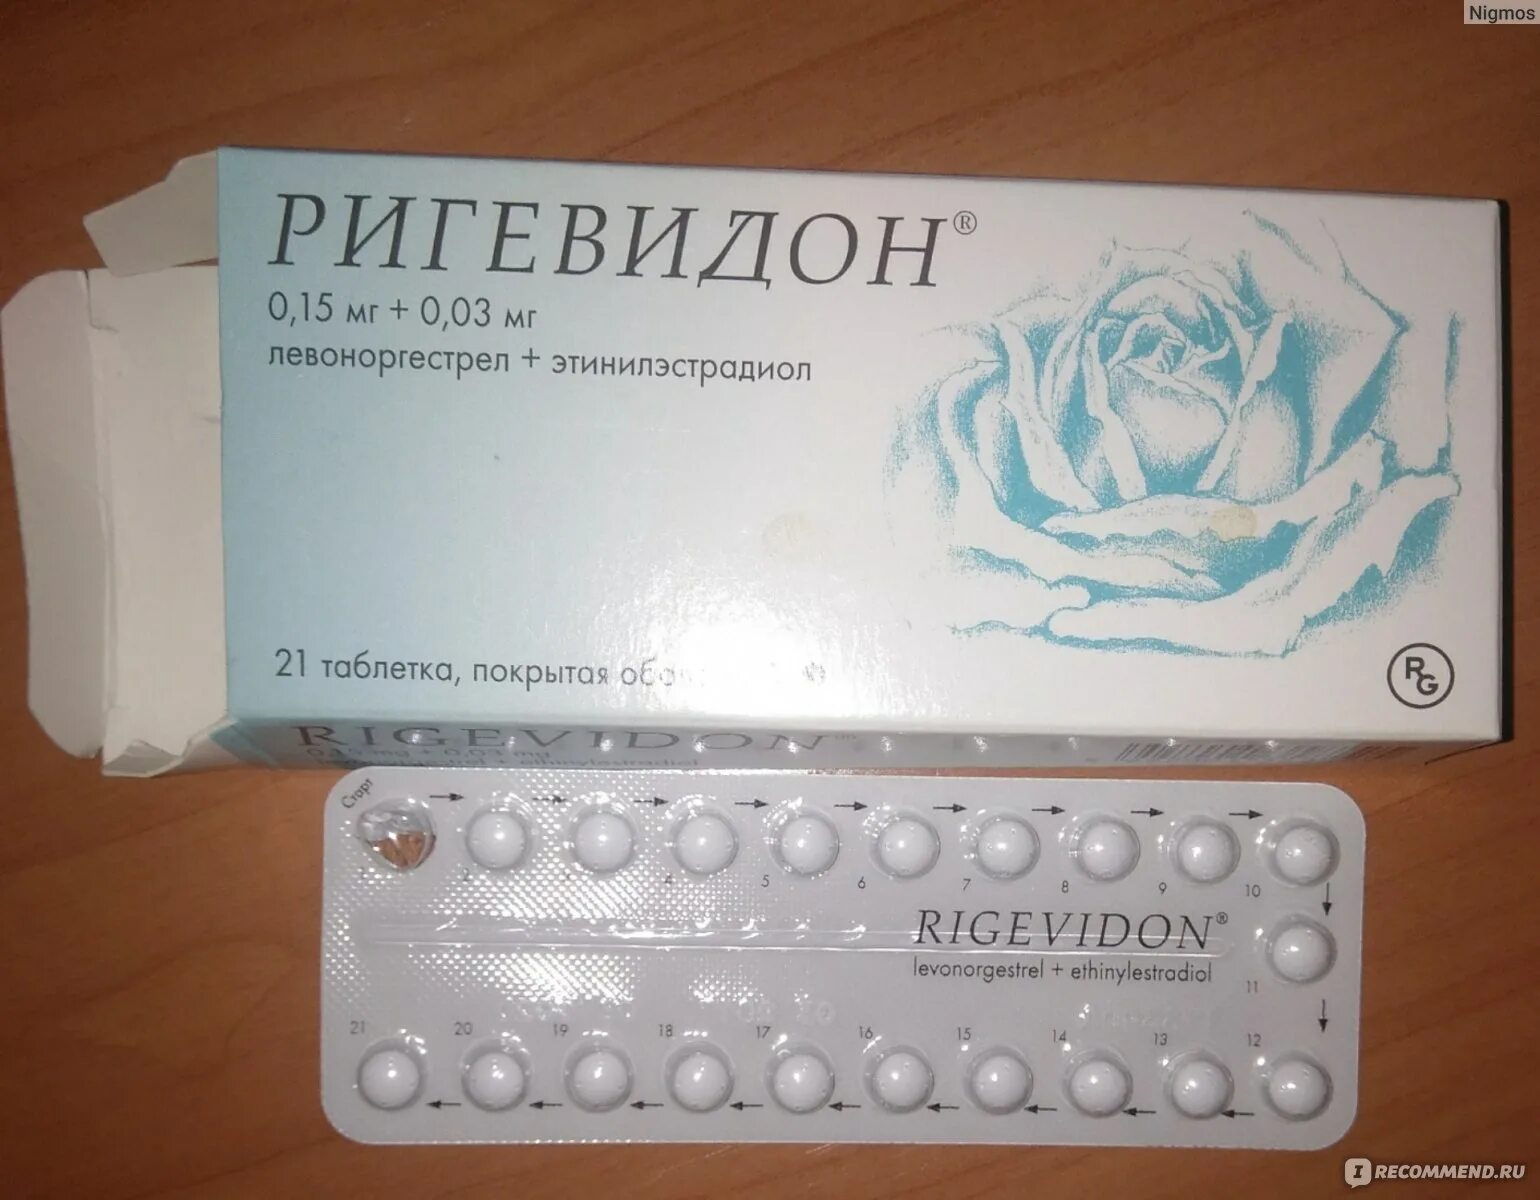 Противозачаточные таблетки ригевидон. Гормональный препарат ригевидон. Противозачаточные таблетки для женщин ригевидон. Таблетки противозачаточные реговидон.